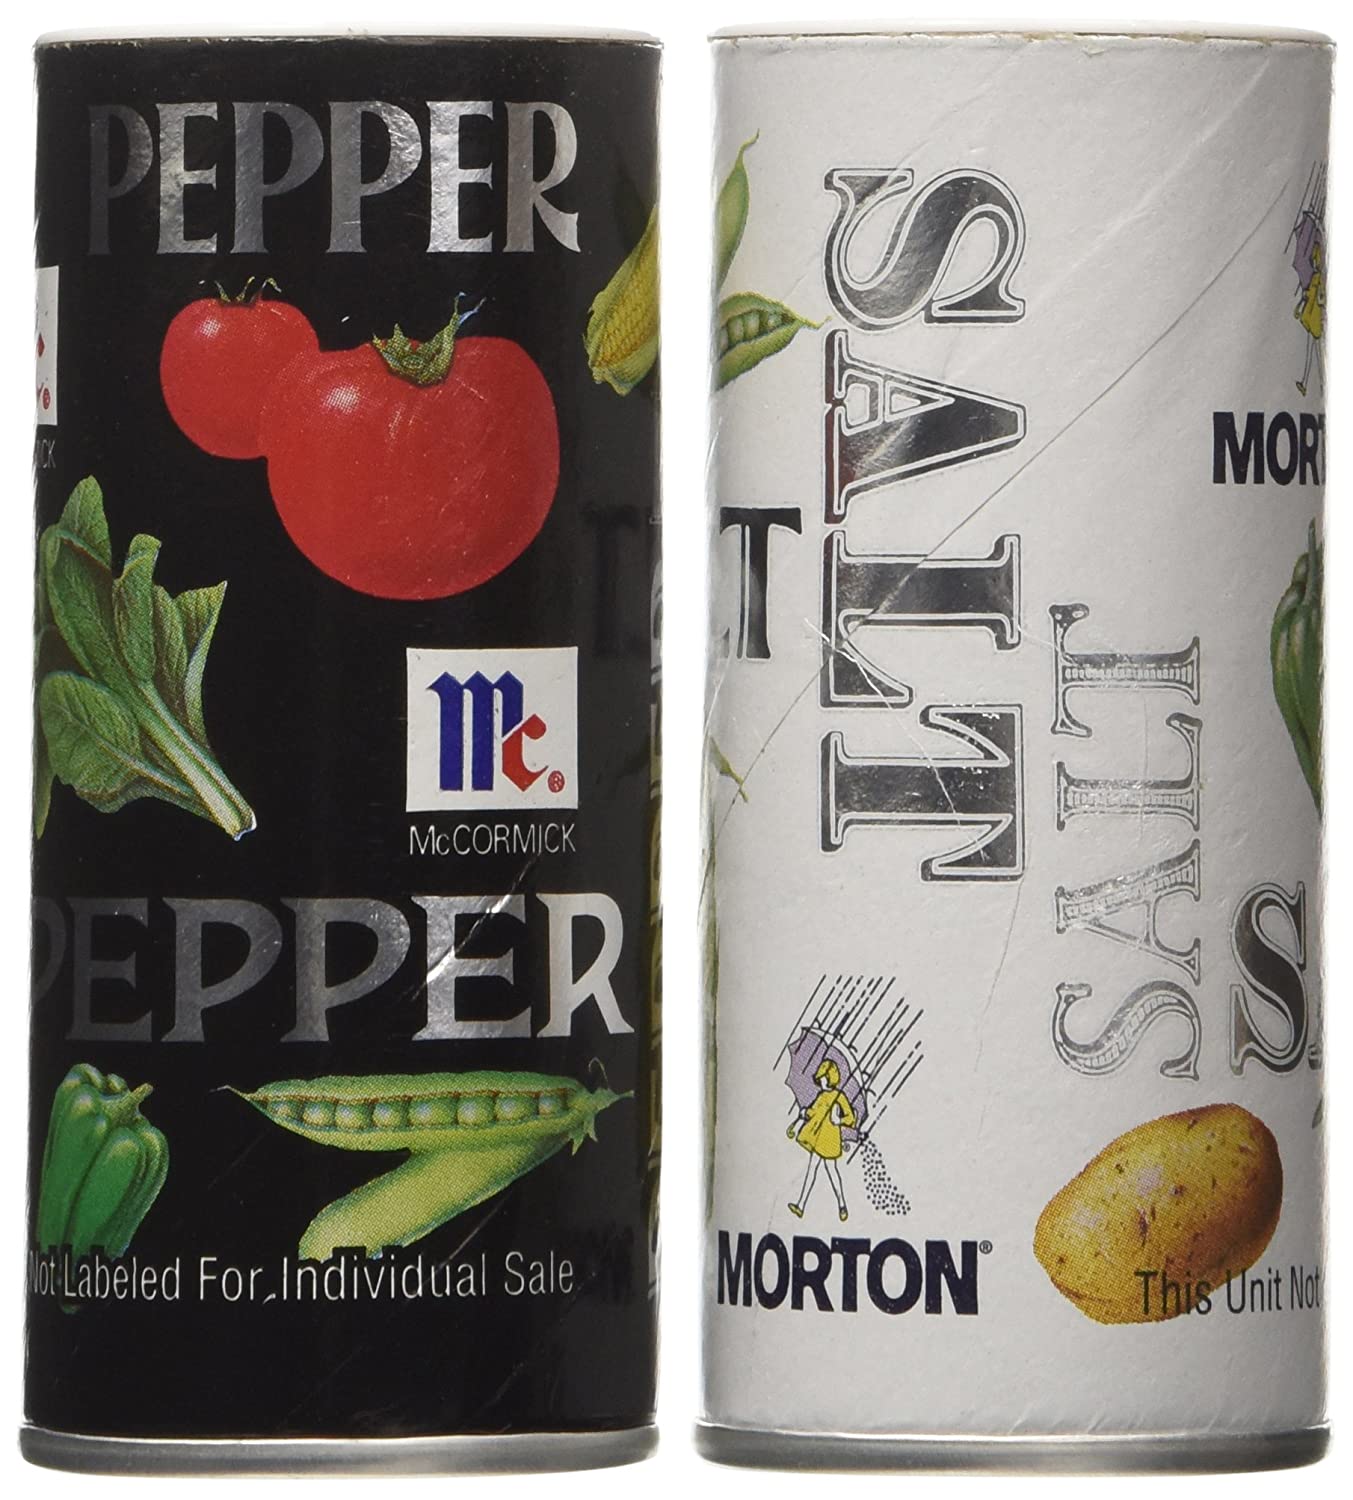 stm>Salt & Pepper Kit, one